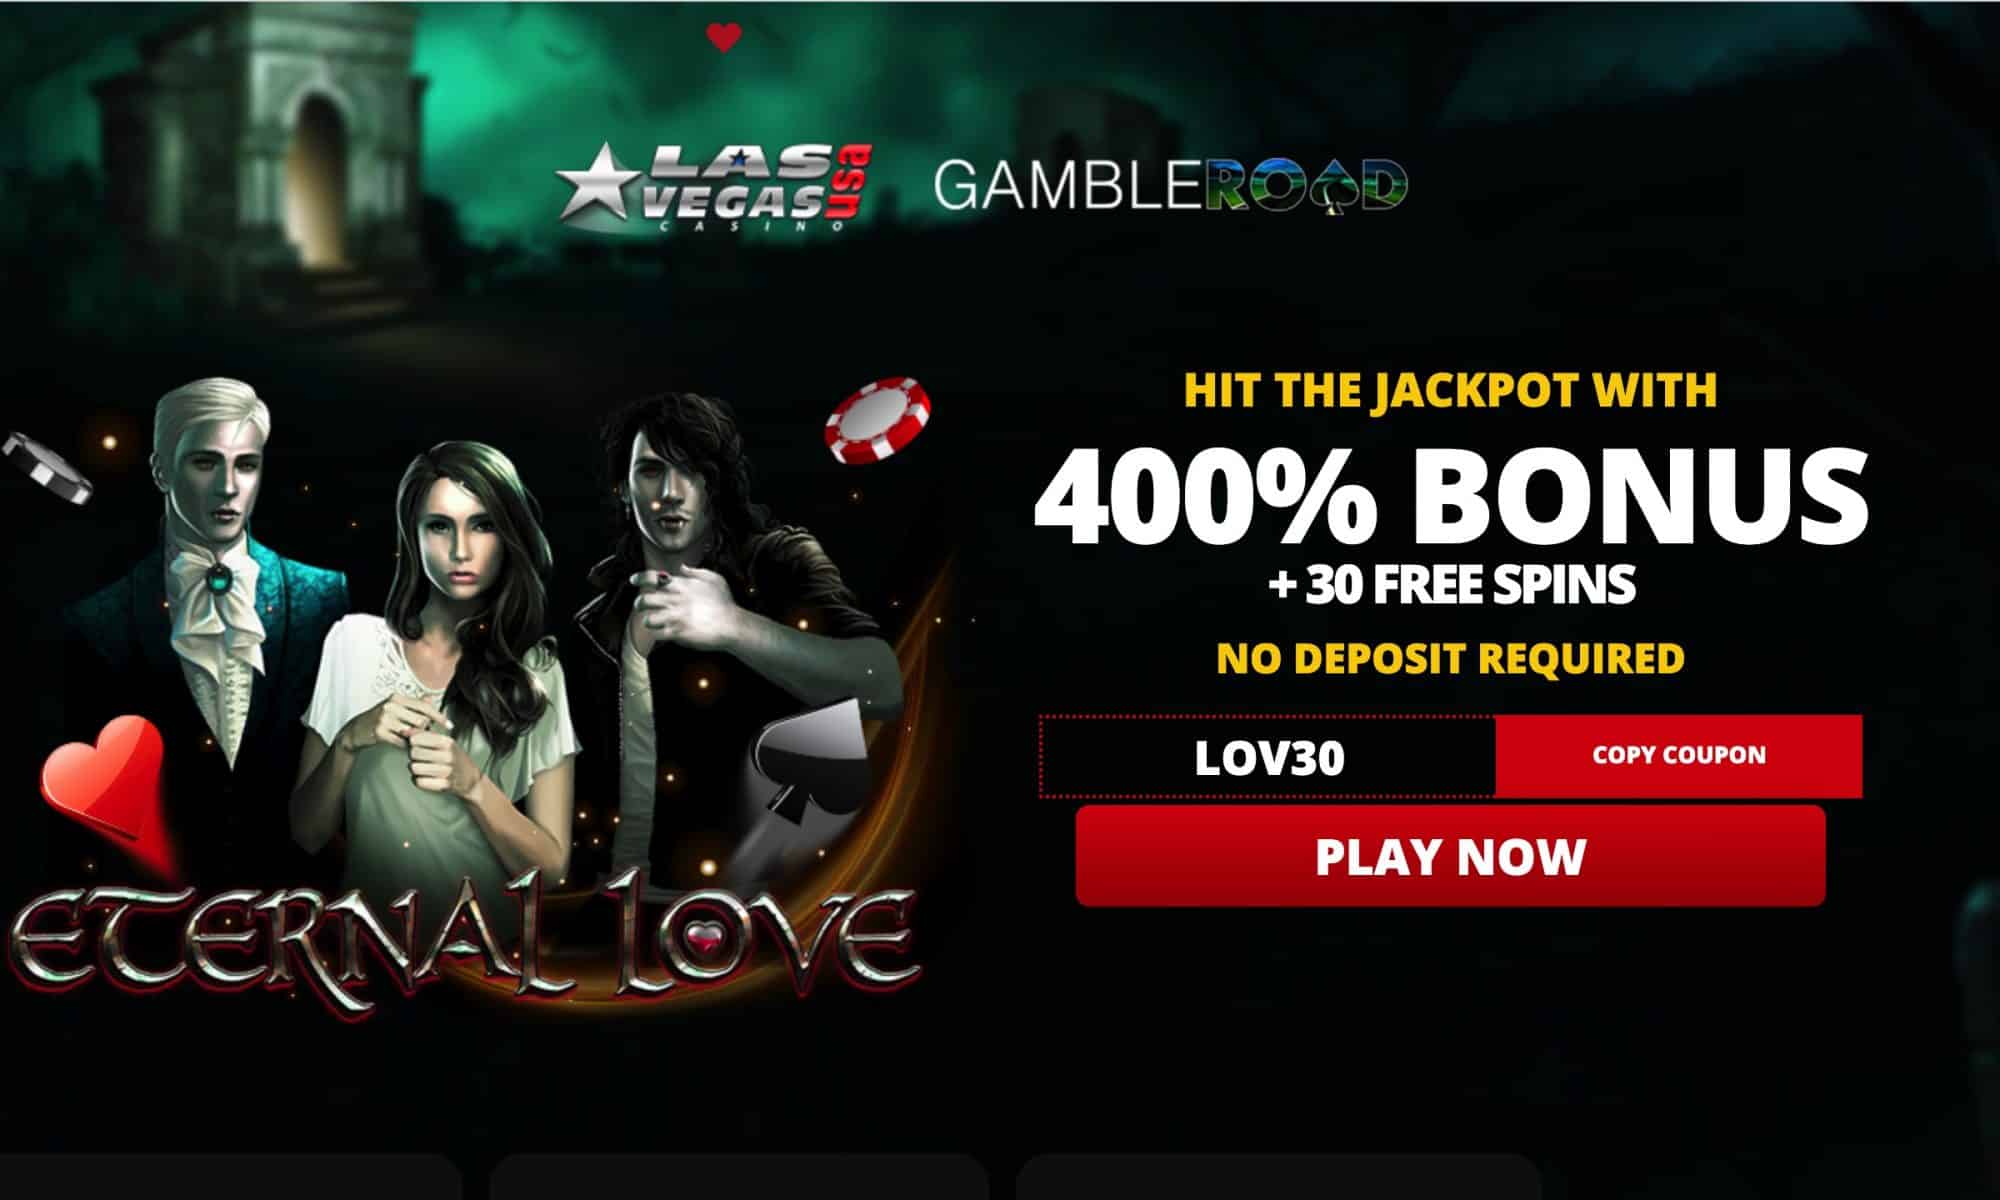 Las Vegas USA Casino - 30 free spins plus 400% bonus